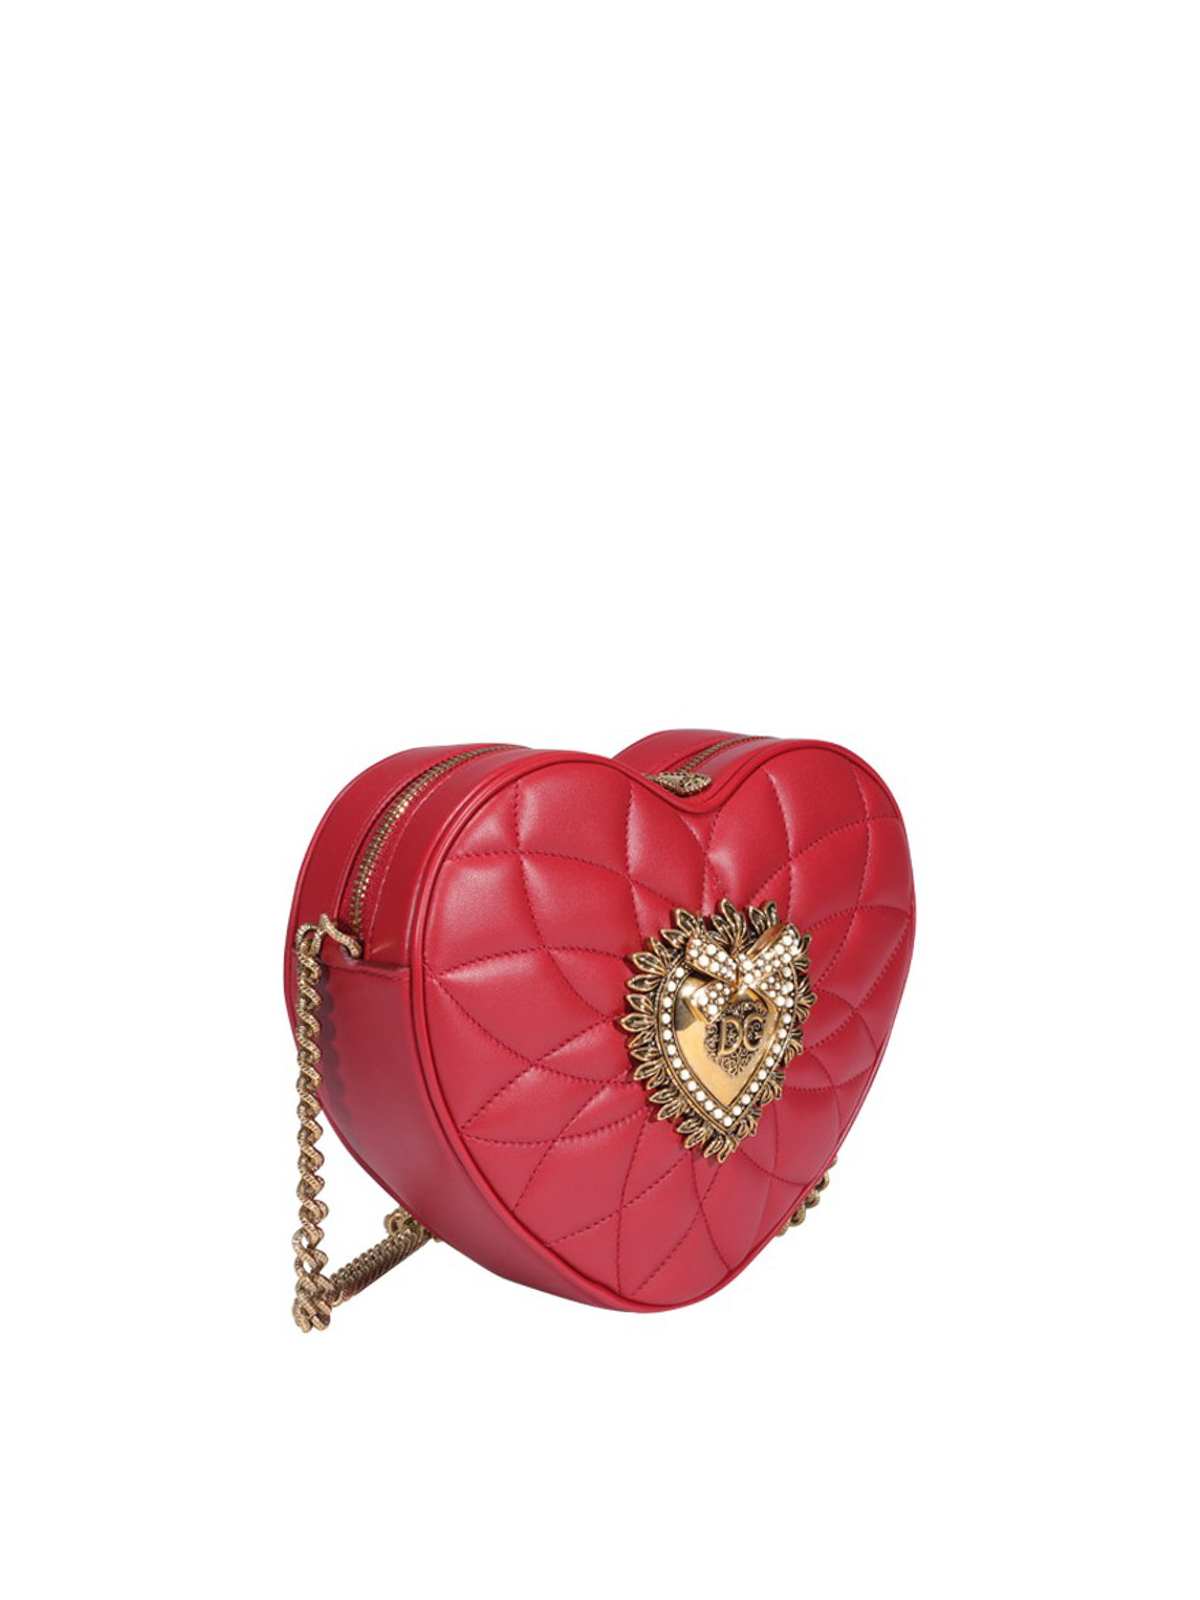 Heart shaped bag, Bags, Heart bag